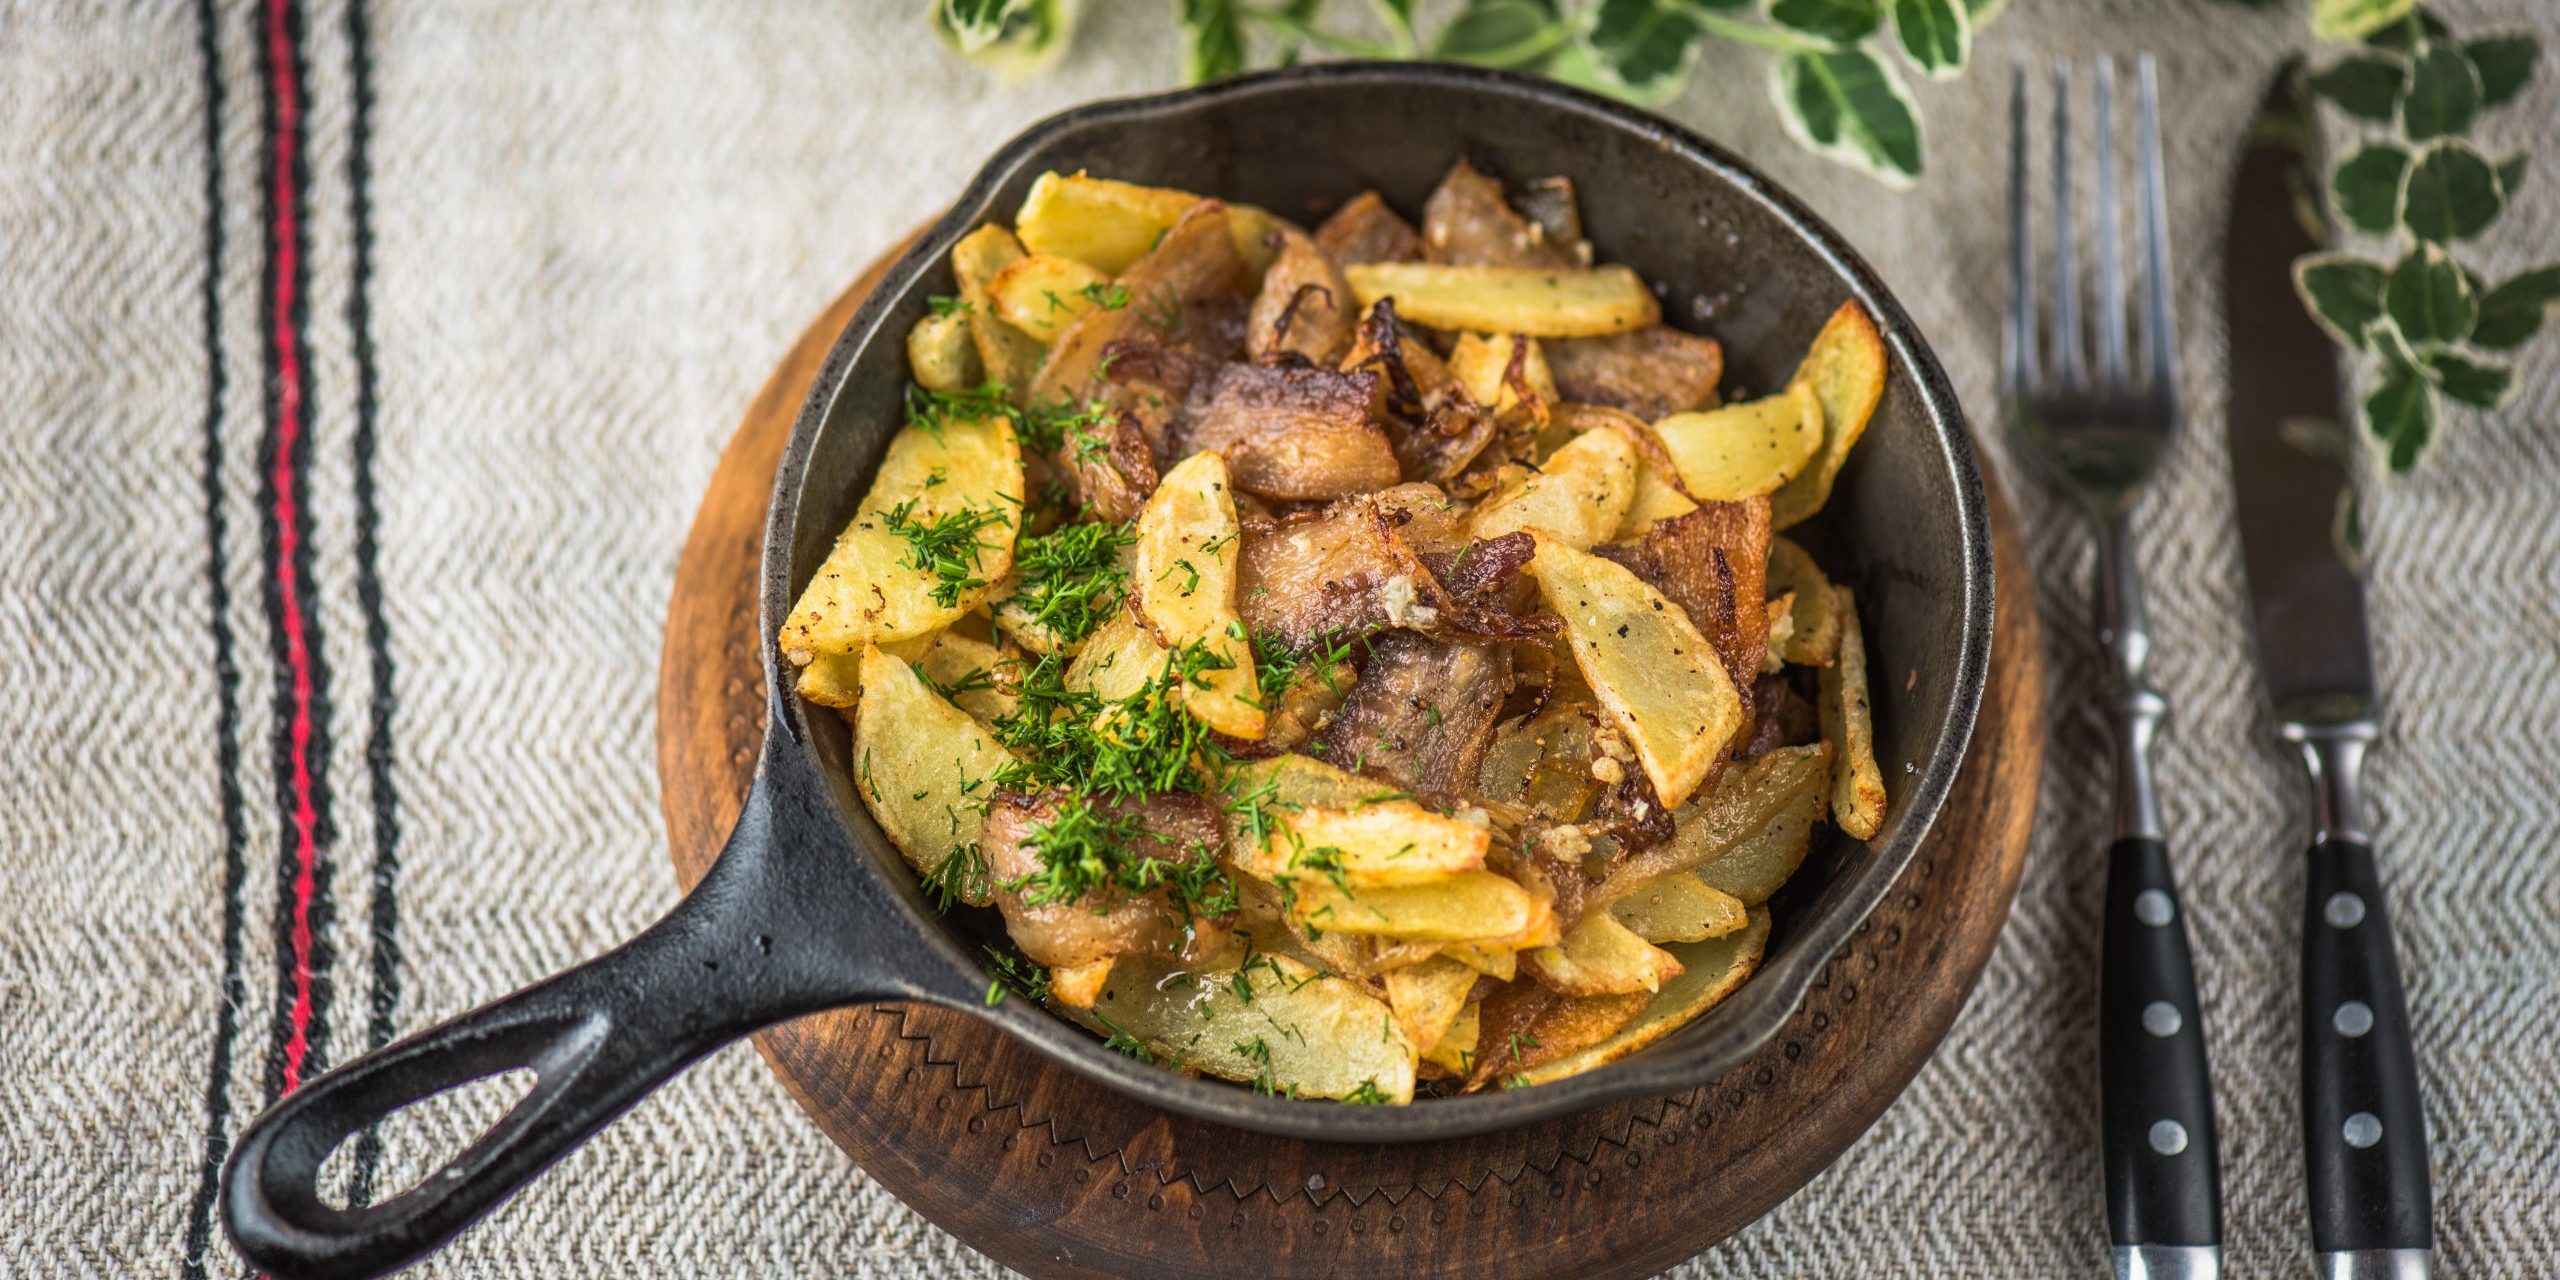 10 идеальных способов приготовить картошку с мясом в духовке и на плите горячие блюда,мясные блюда,овощные блюда,рецепты